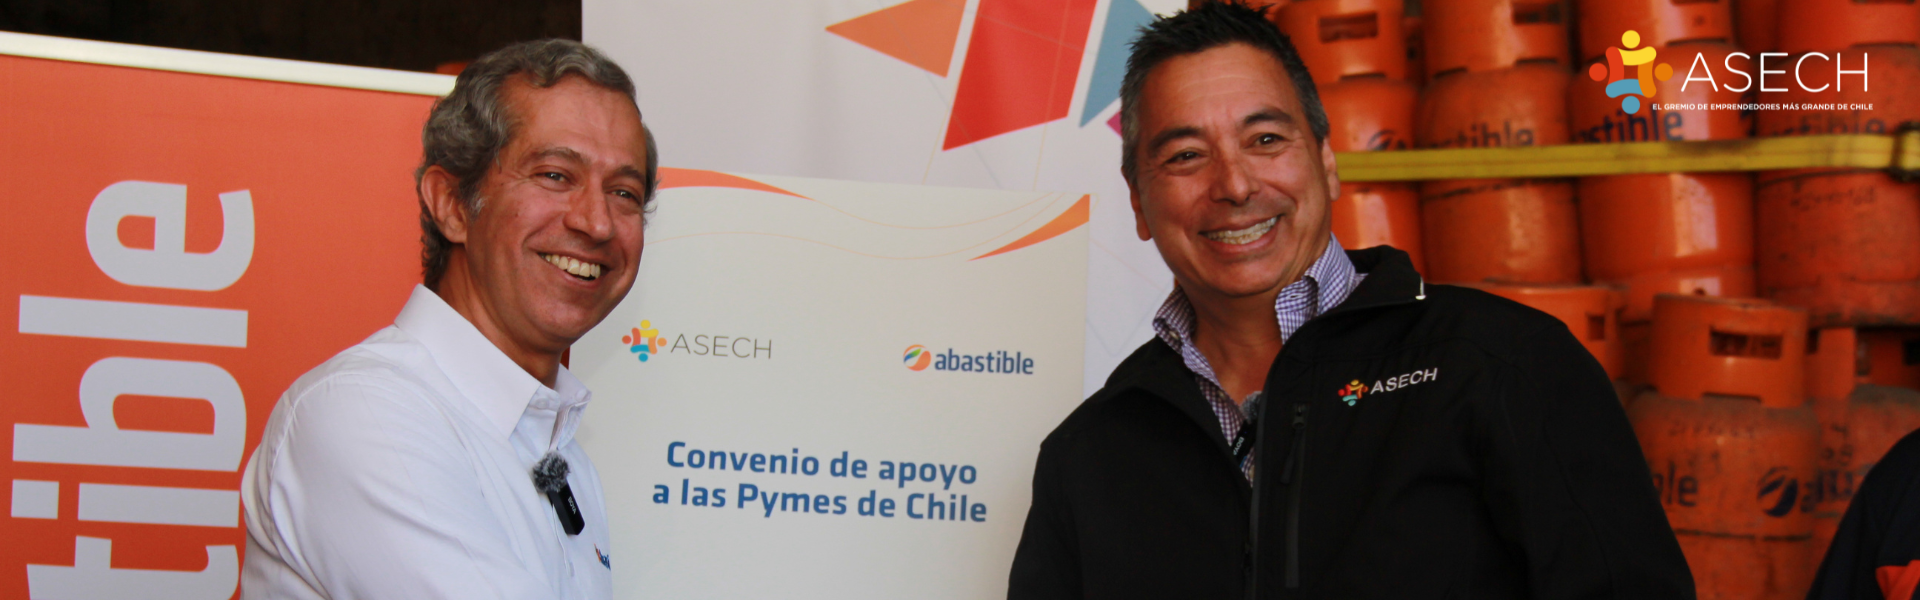 ASECH y Abastible fortaleciendo a las Pymes de Chile. thumbnail